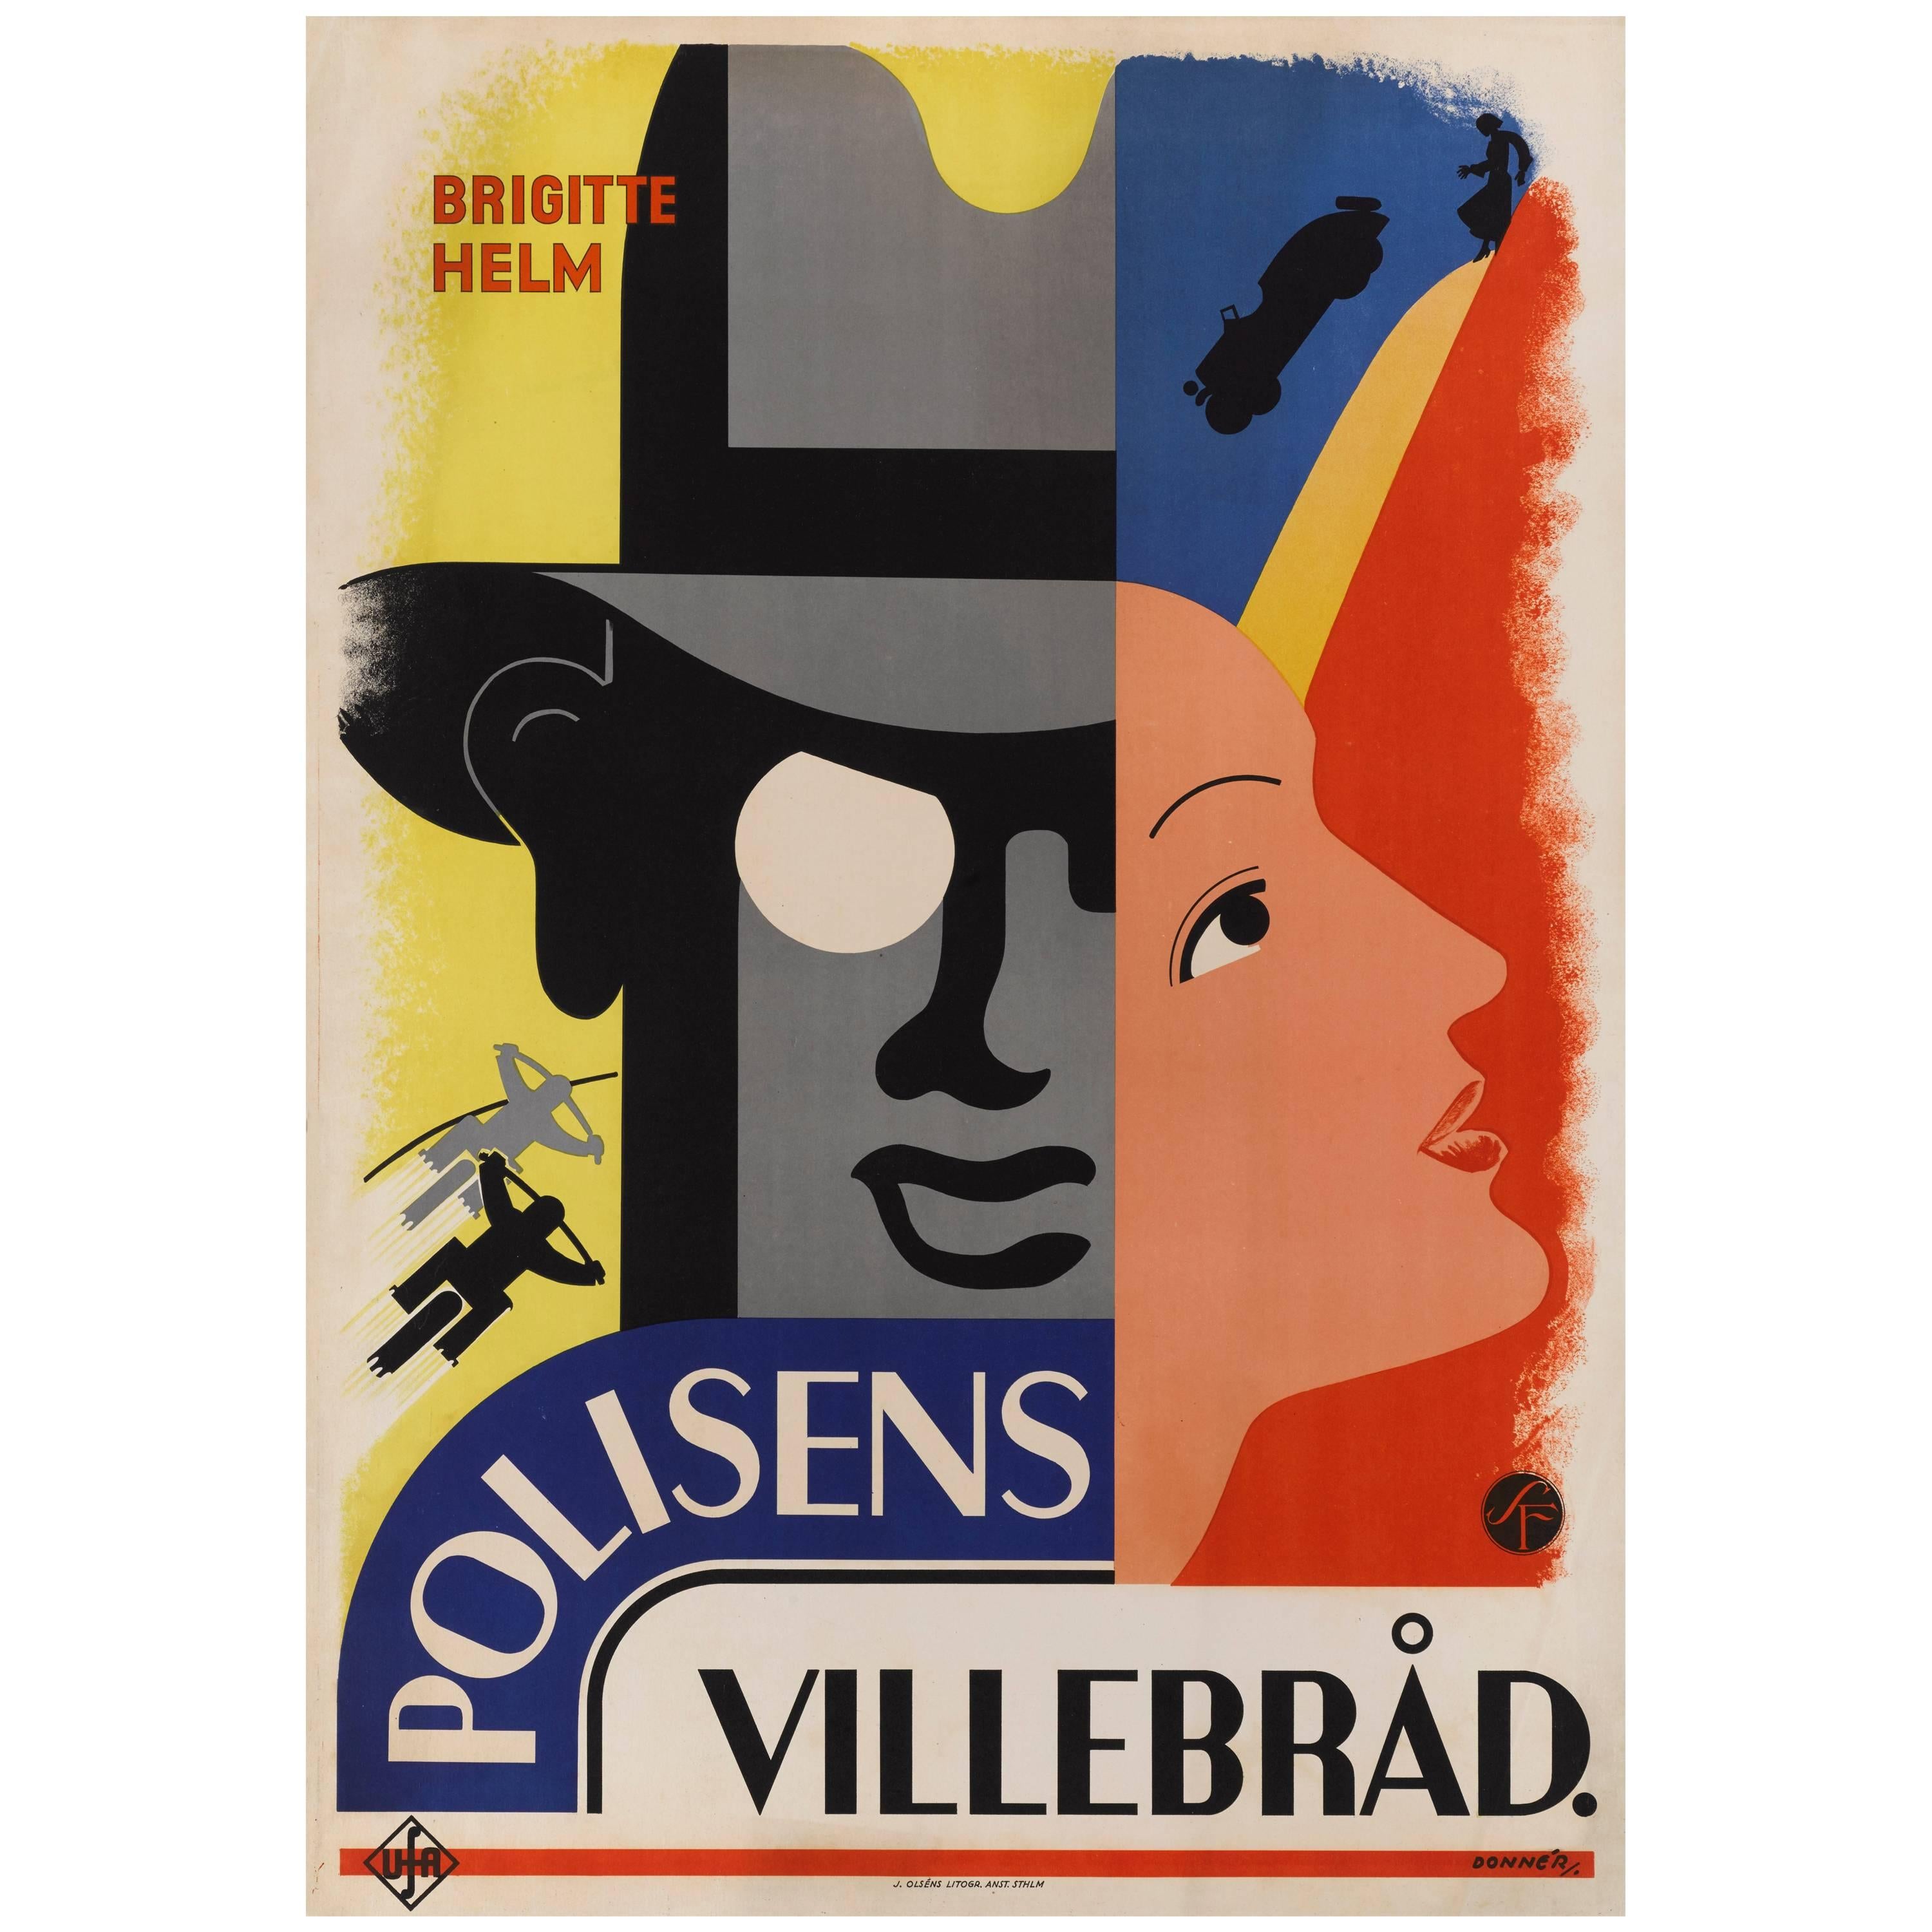 Die Schonen Tage von Aranjuez / Polisens Villebrad Original schwedisches Filmplakat